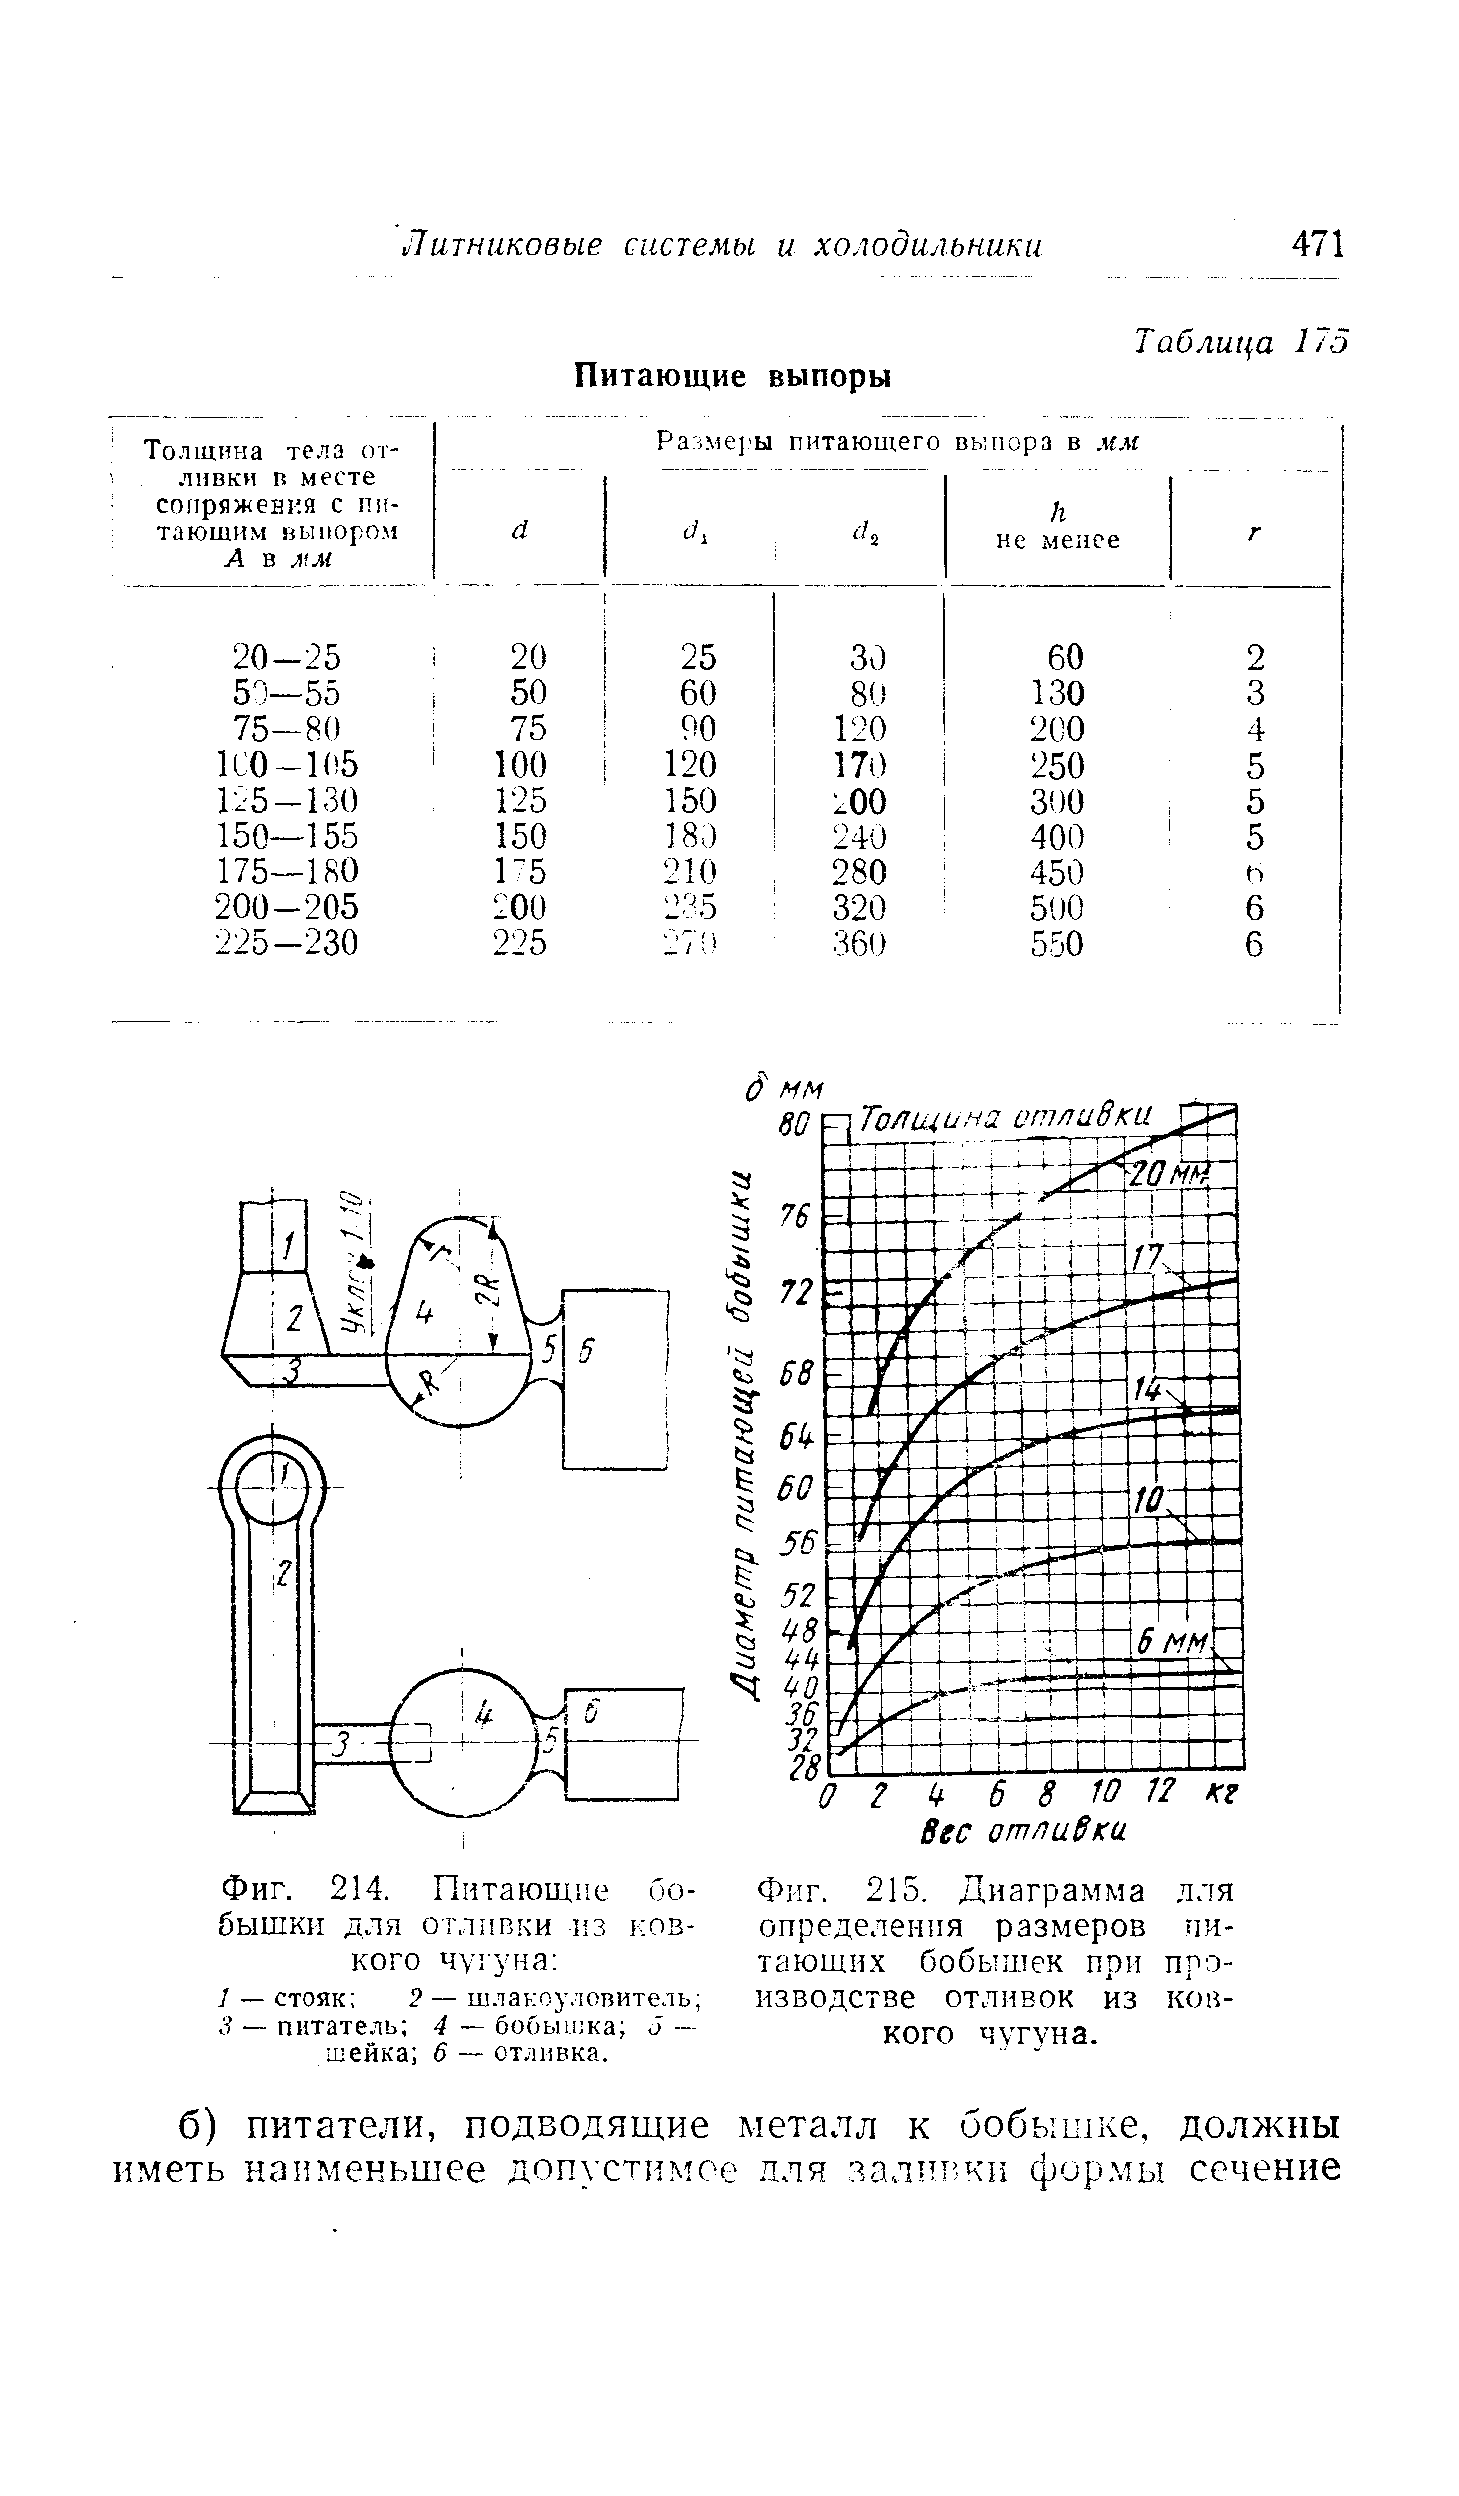 Фиг. 215. Диаграмма для определения размеров питающих бобышек при производстве отливок из ковкого чугуна.
